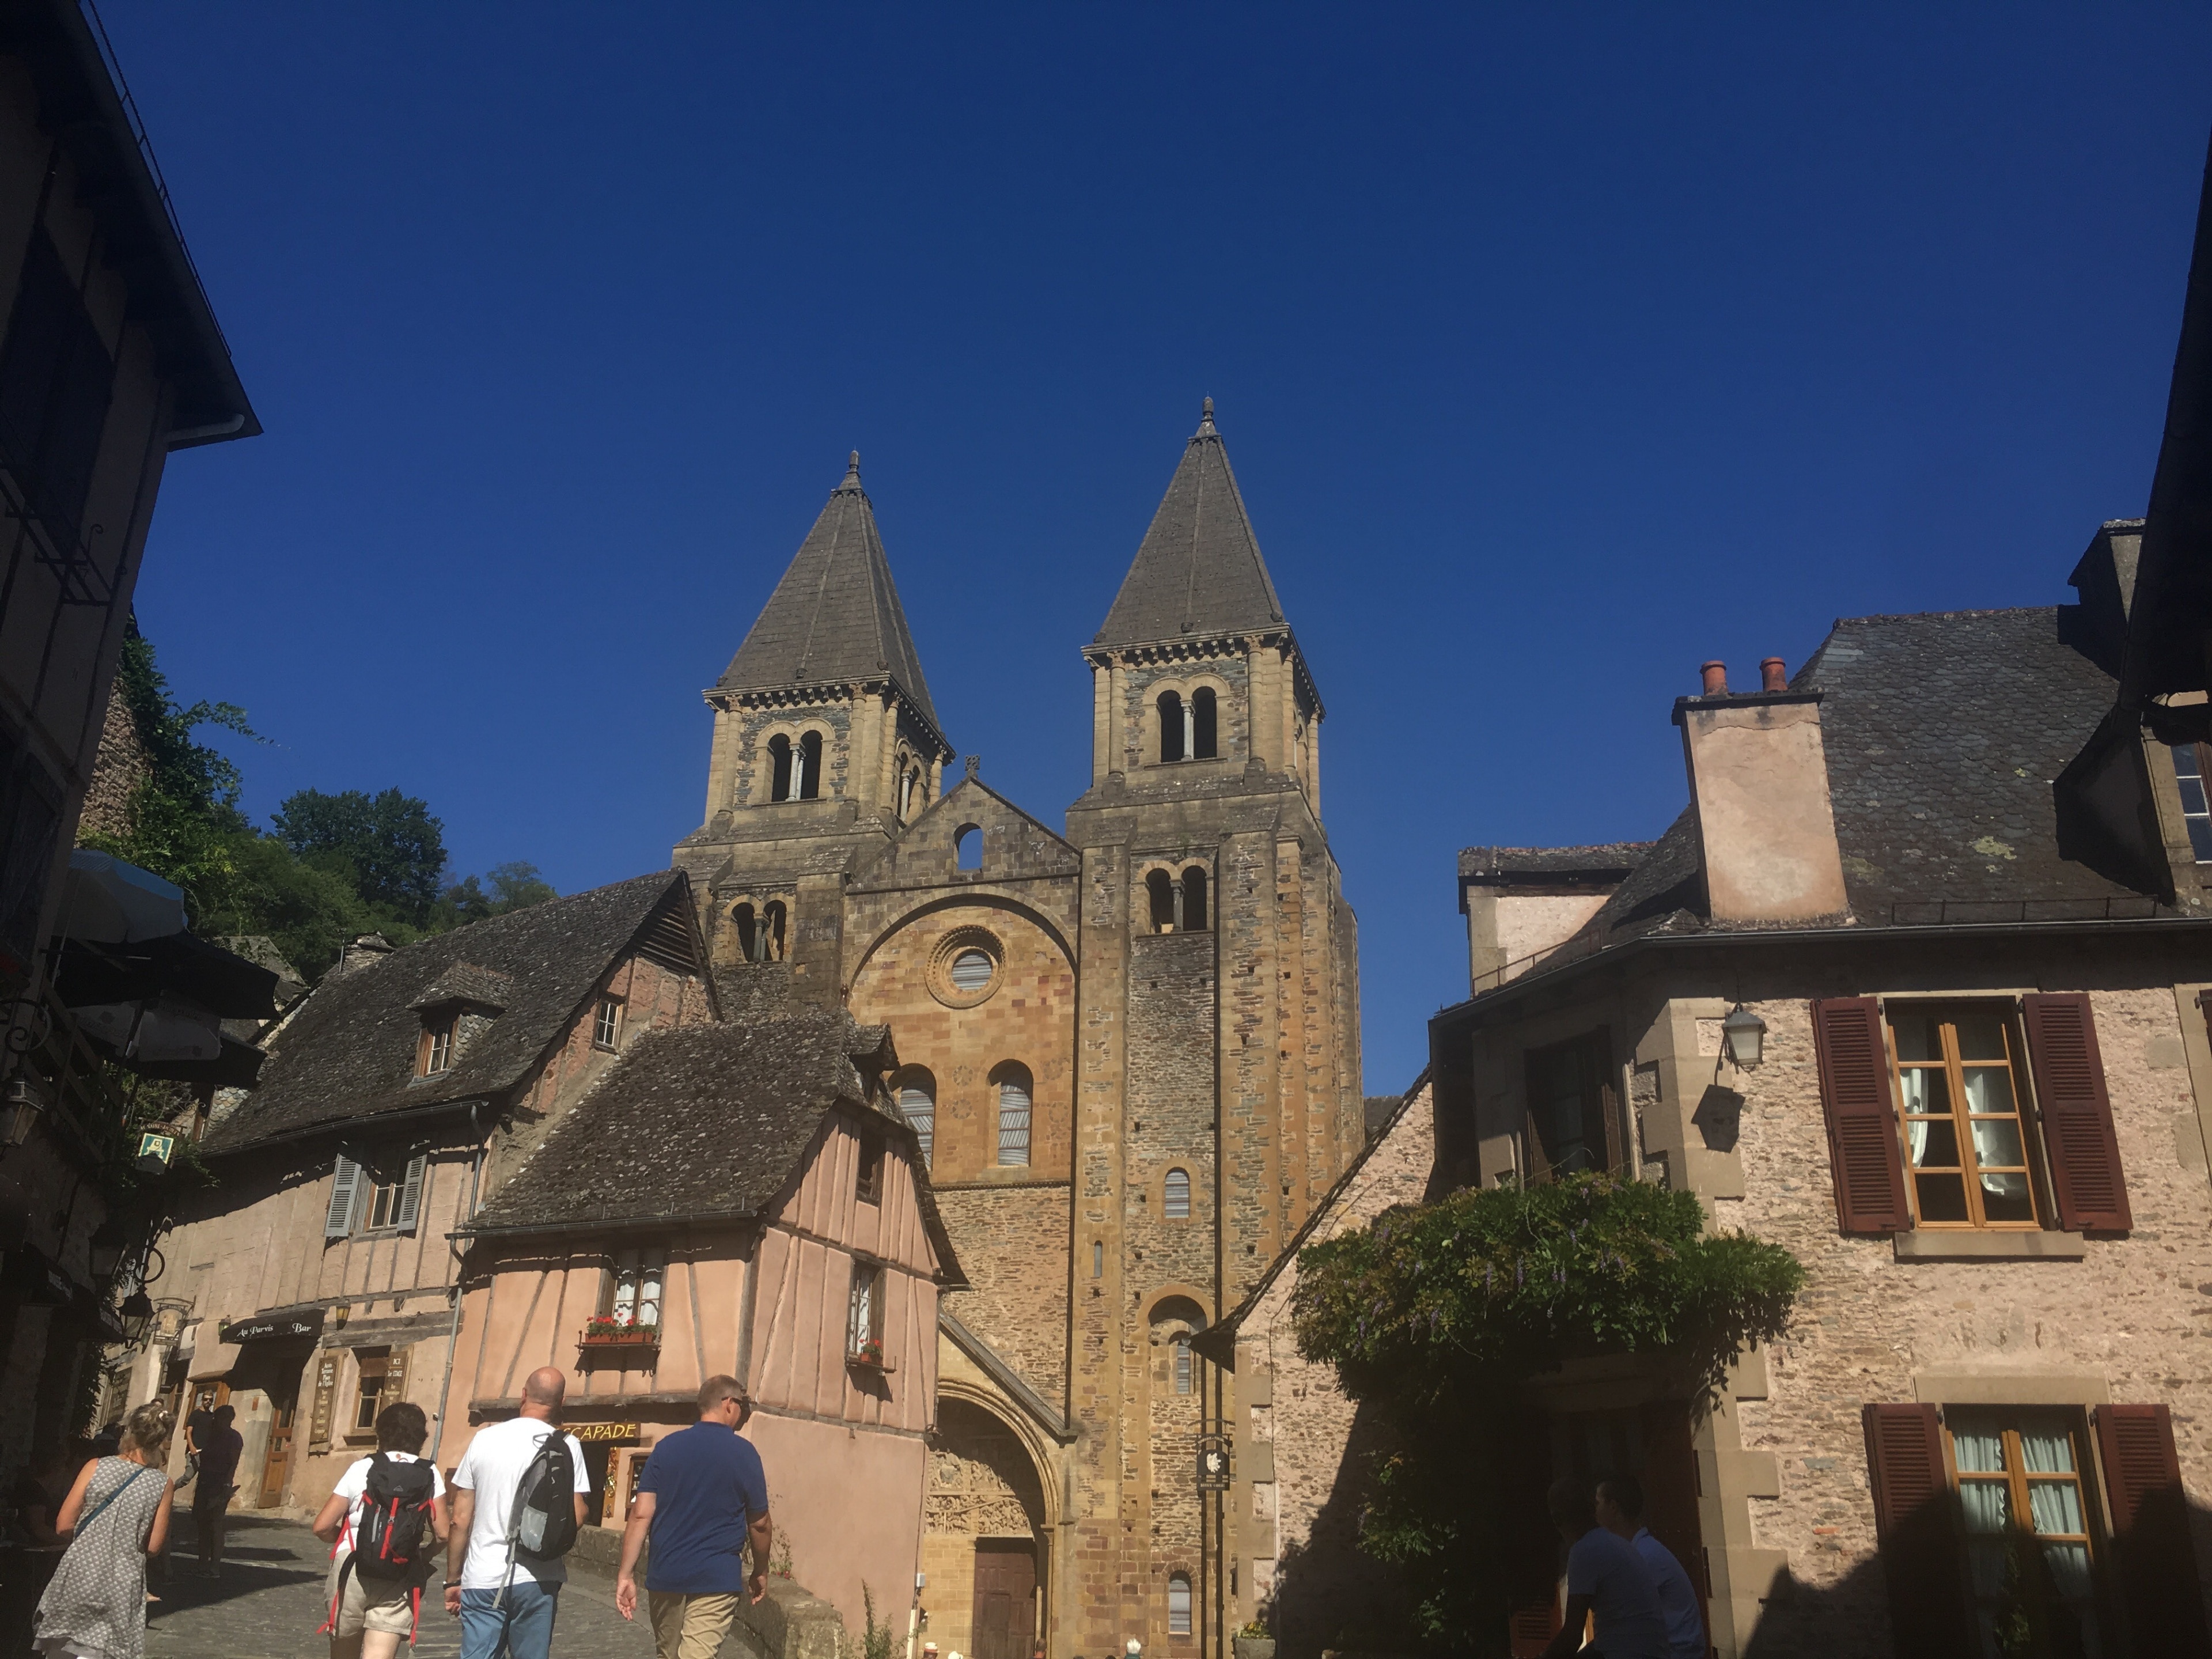 Conques-en-Rouergue turismo: Qué visitar en Conques-en-Rouergue, Occitania,  2023| Viaja con Expedia